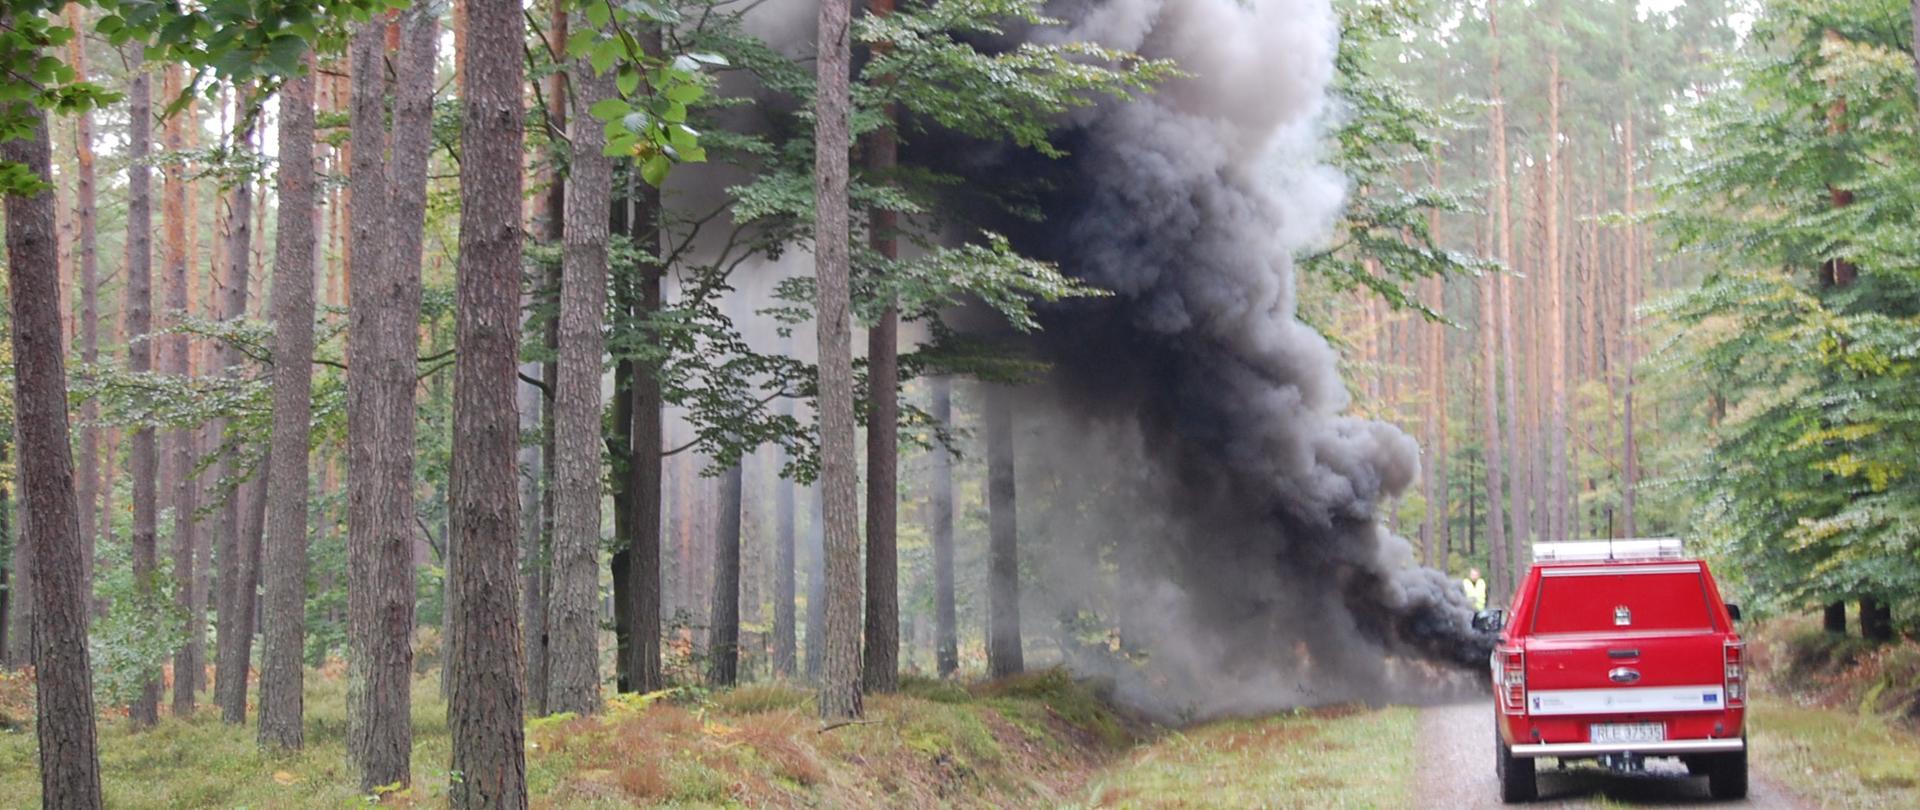 Zdjęcie przedstawia chmurę czarnego dymu, która unosi pomiędzy drzewami. Z prawej strony stoi pojazd należący do nadleśnictwa Leżajsk.